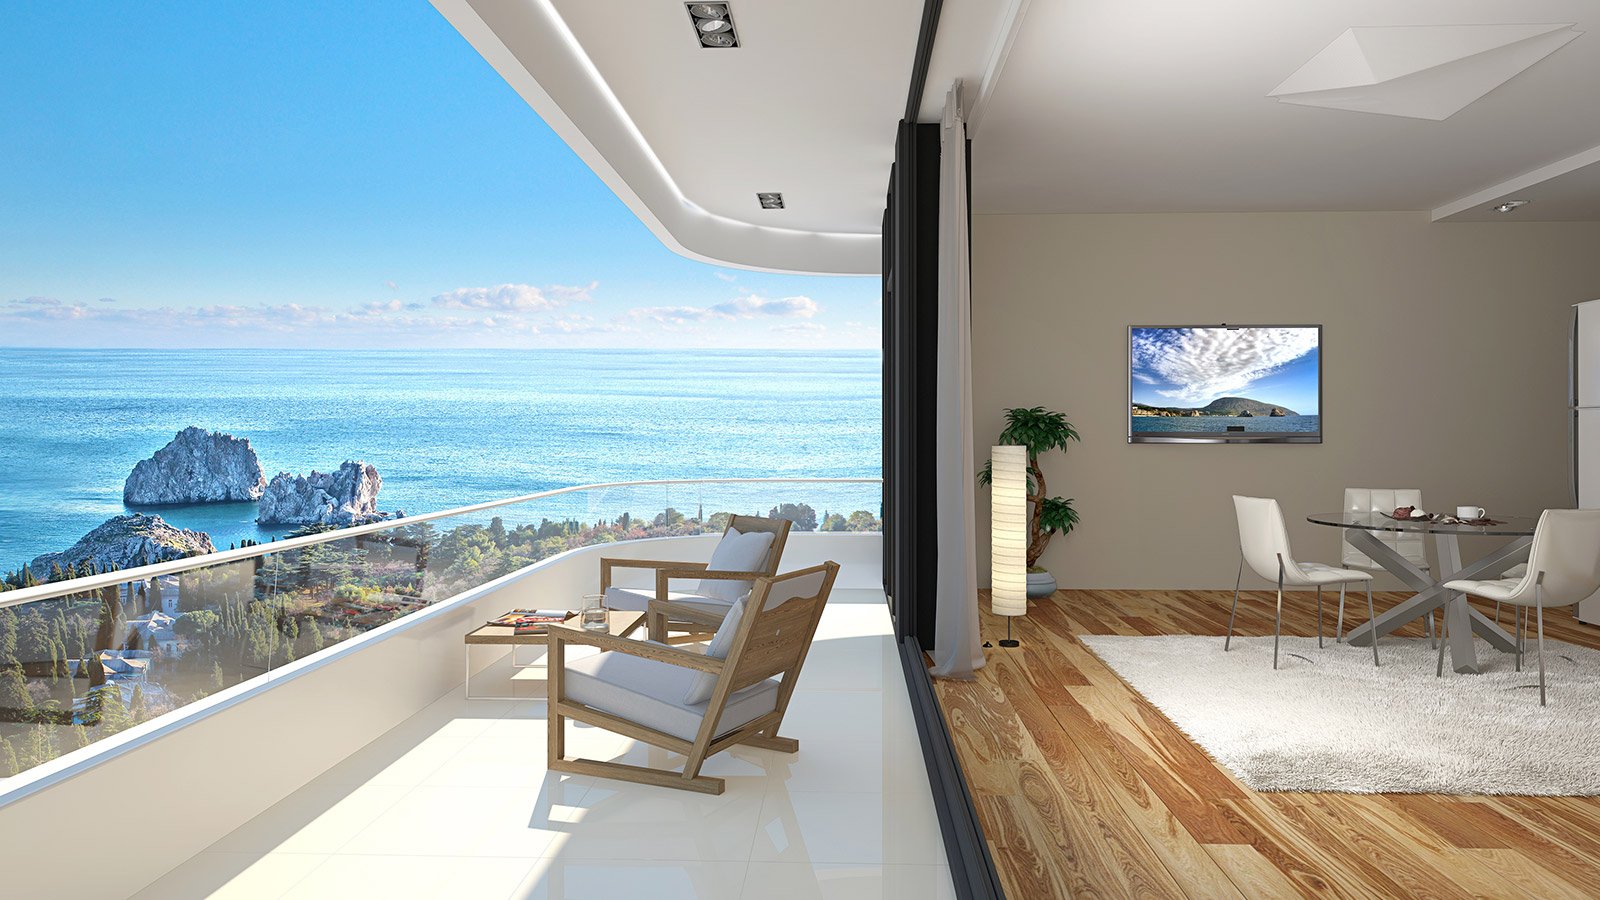 Ялта 2 комнатная квартира. Панорамный вид на море. Домик у моря. Жилье с видом на море. Видовая квартира с видом на море.